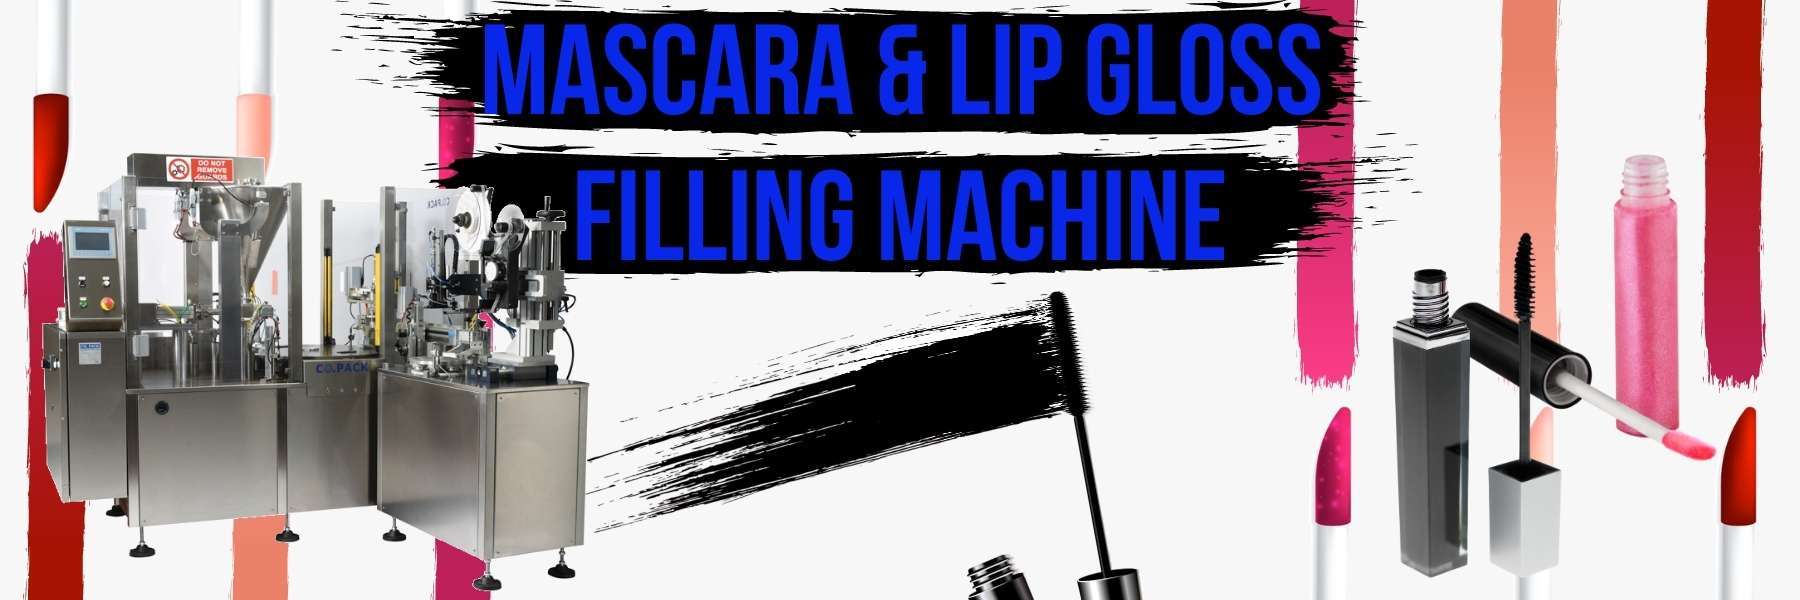 Mascara_lip_gloss_machine-3